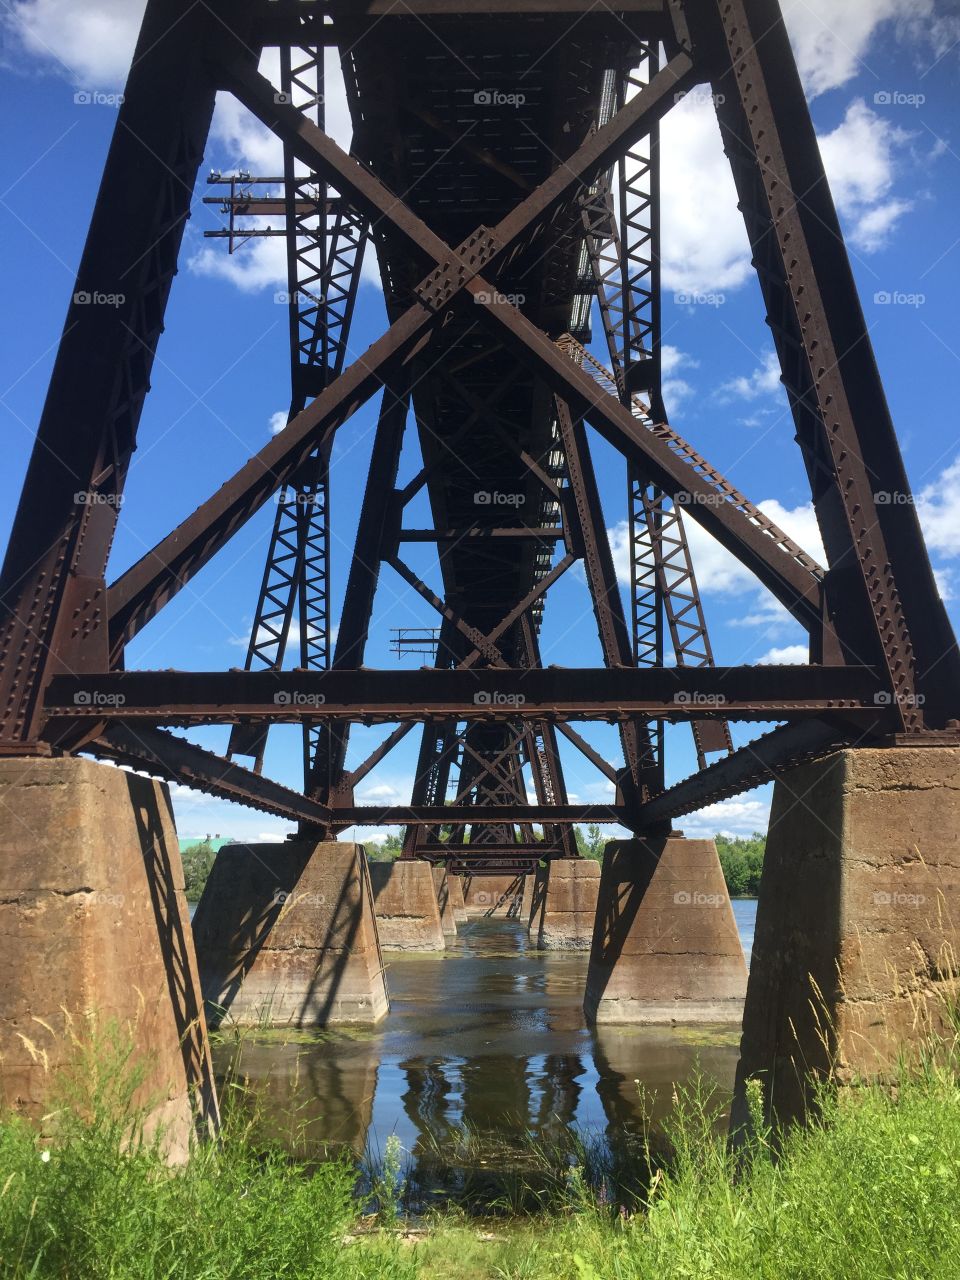 Train bridge over the river, concrete and metal